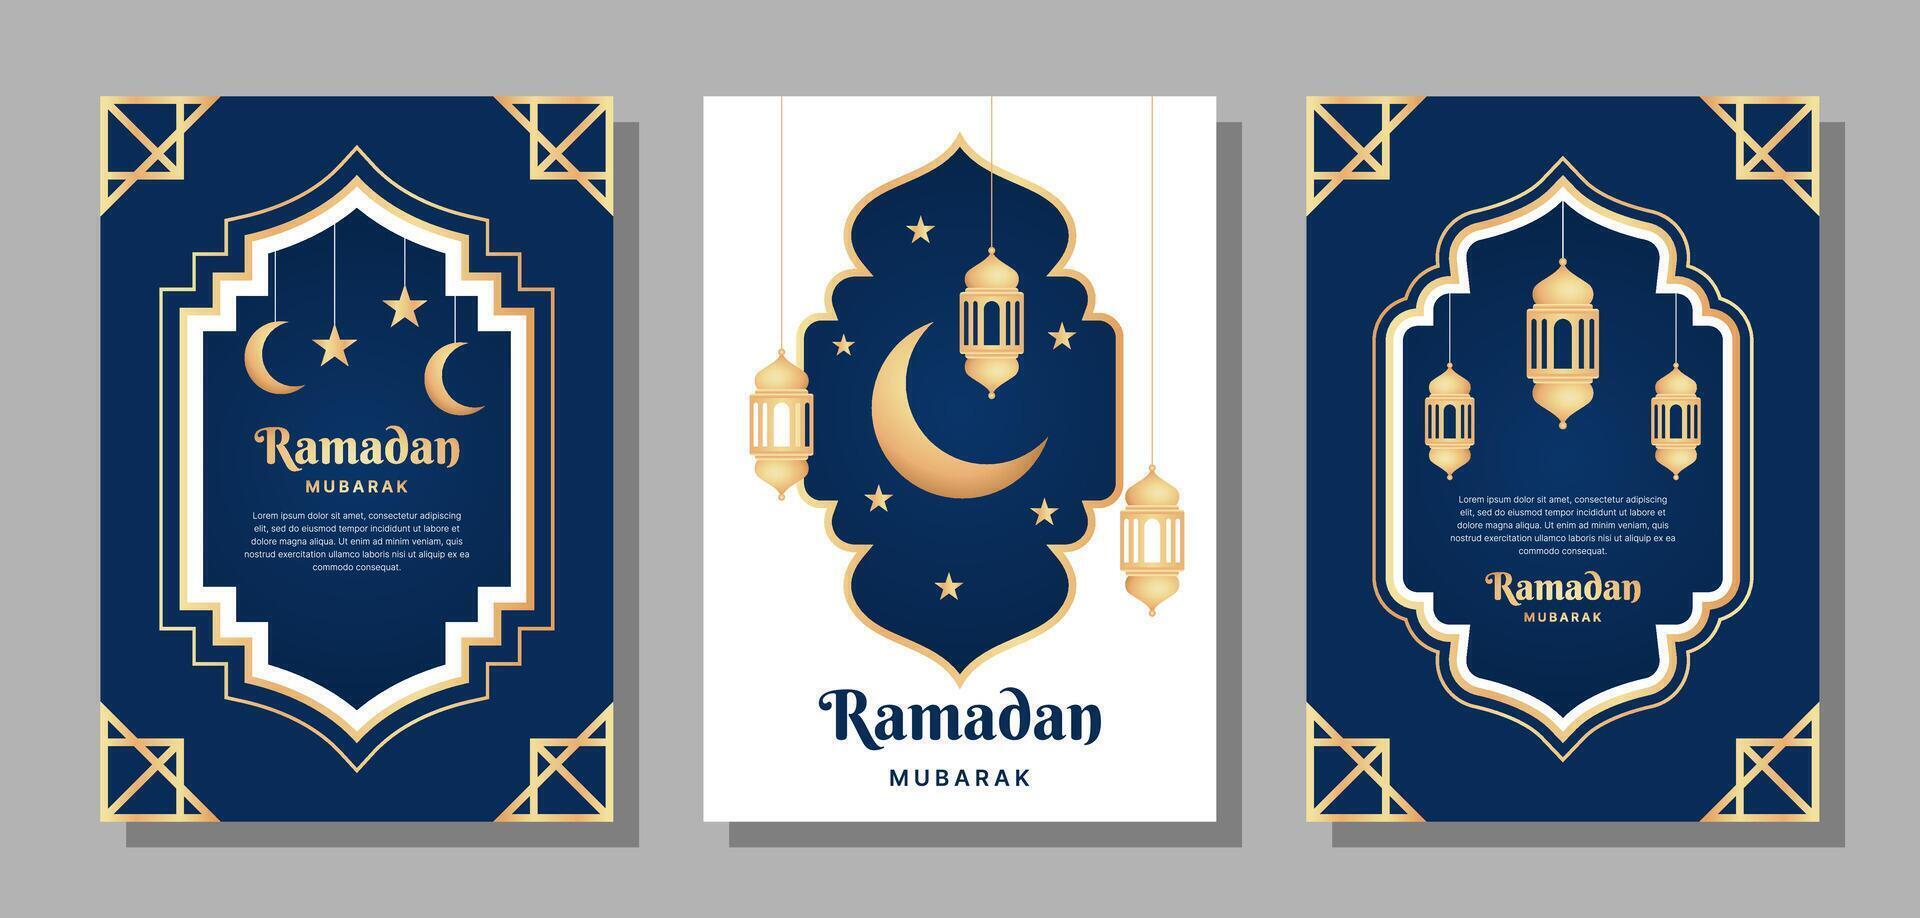 reeks van vector a4 grootte Ramadan mubarak ontwerpen voor flyers, affiches, brochures, en anderen.